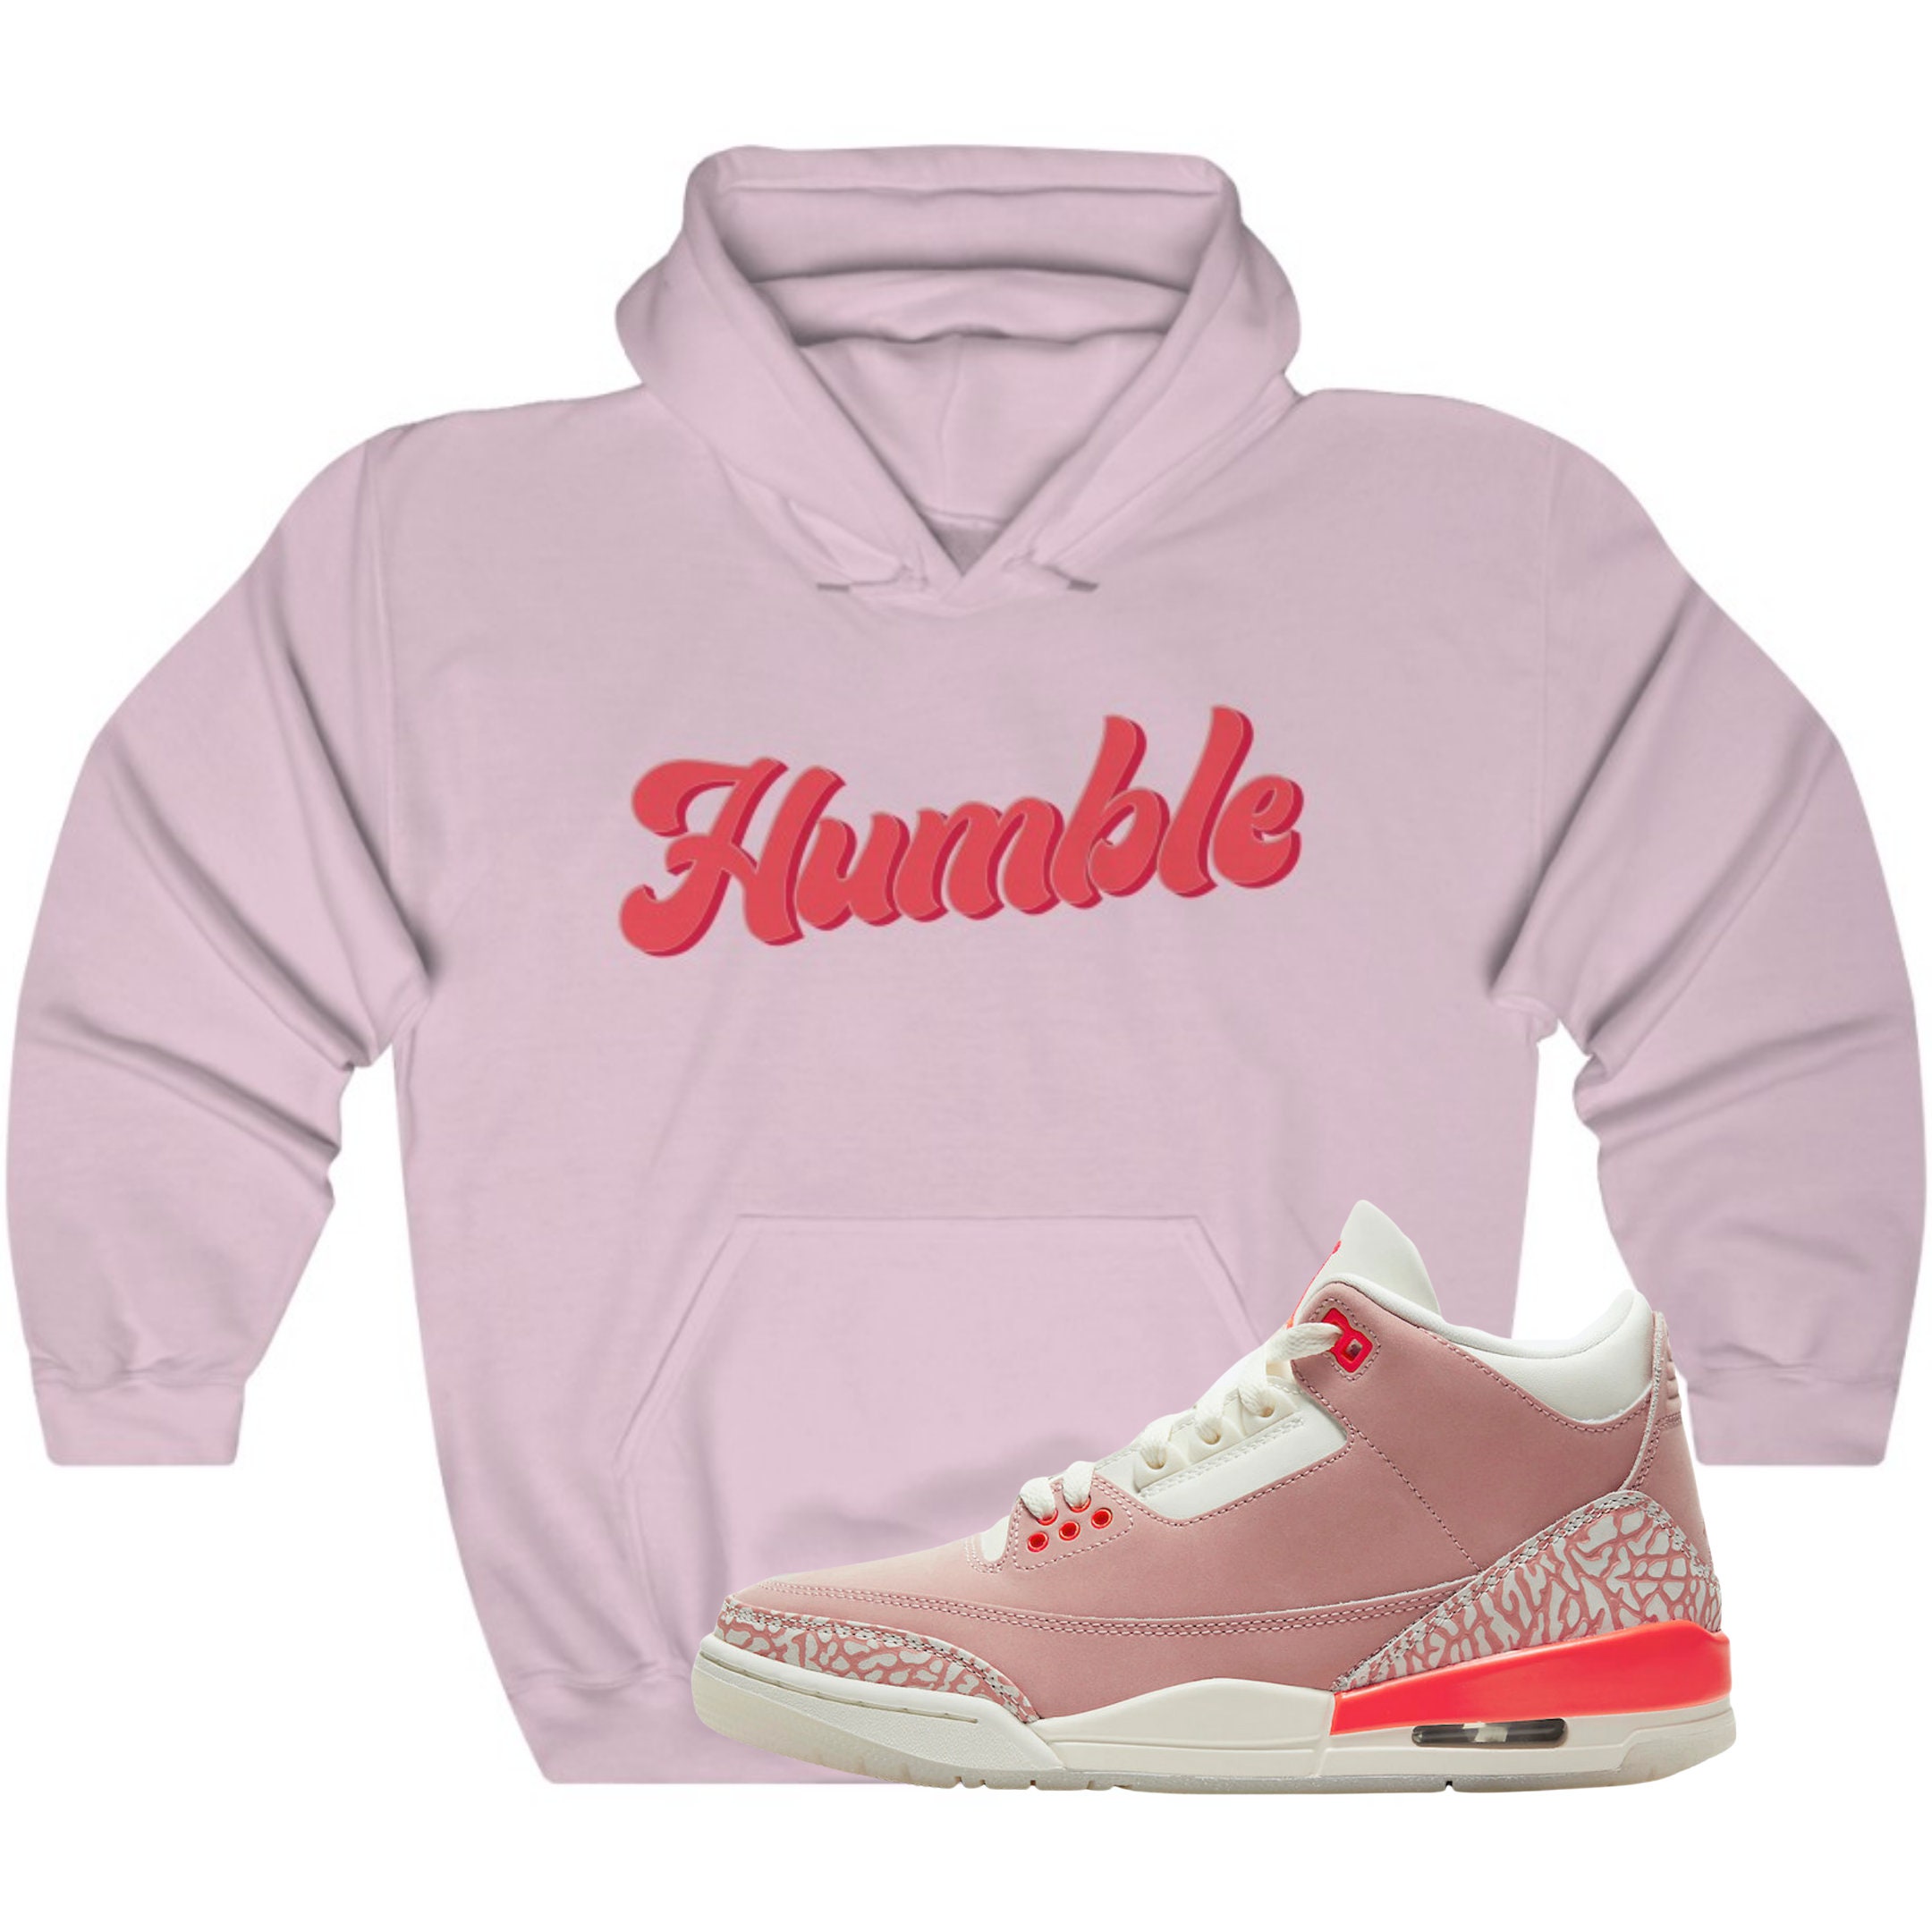 Air Jordan 3 Rust Pink Sneaker Matching Hoodie Outfit Etsy